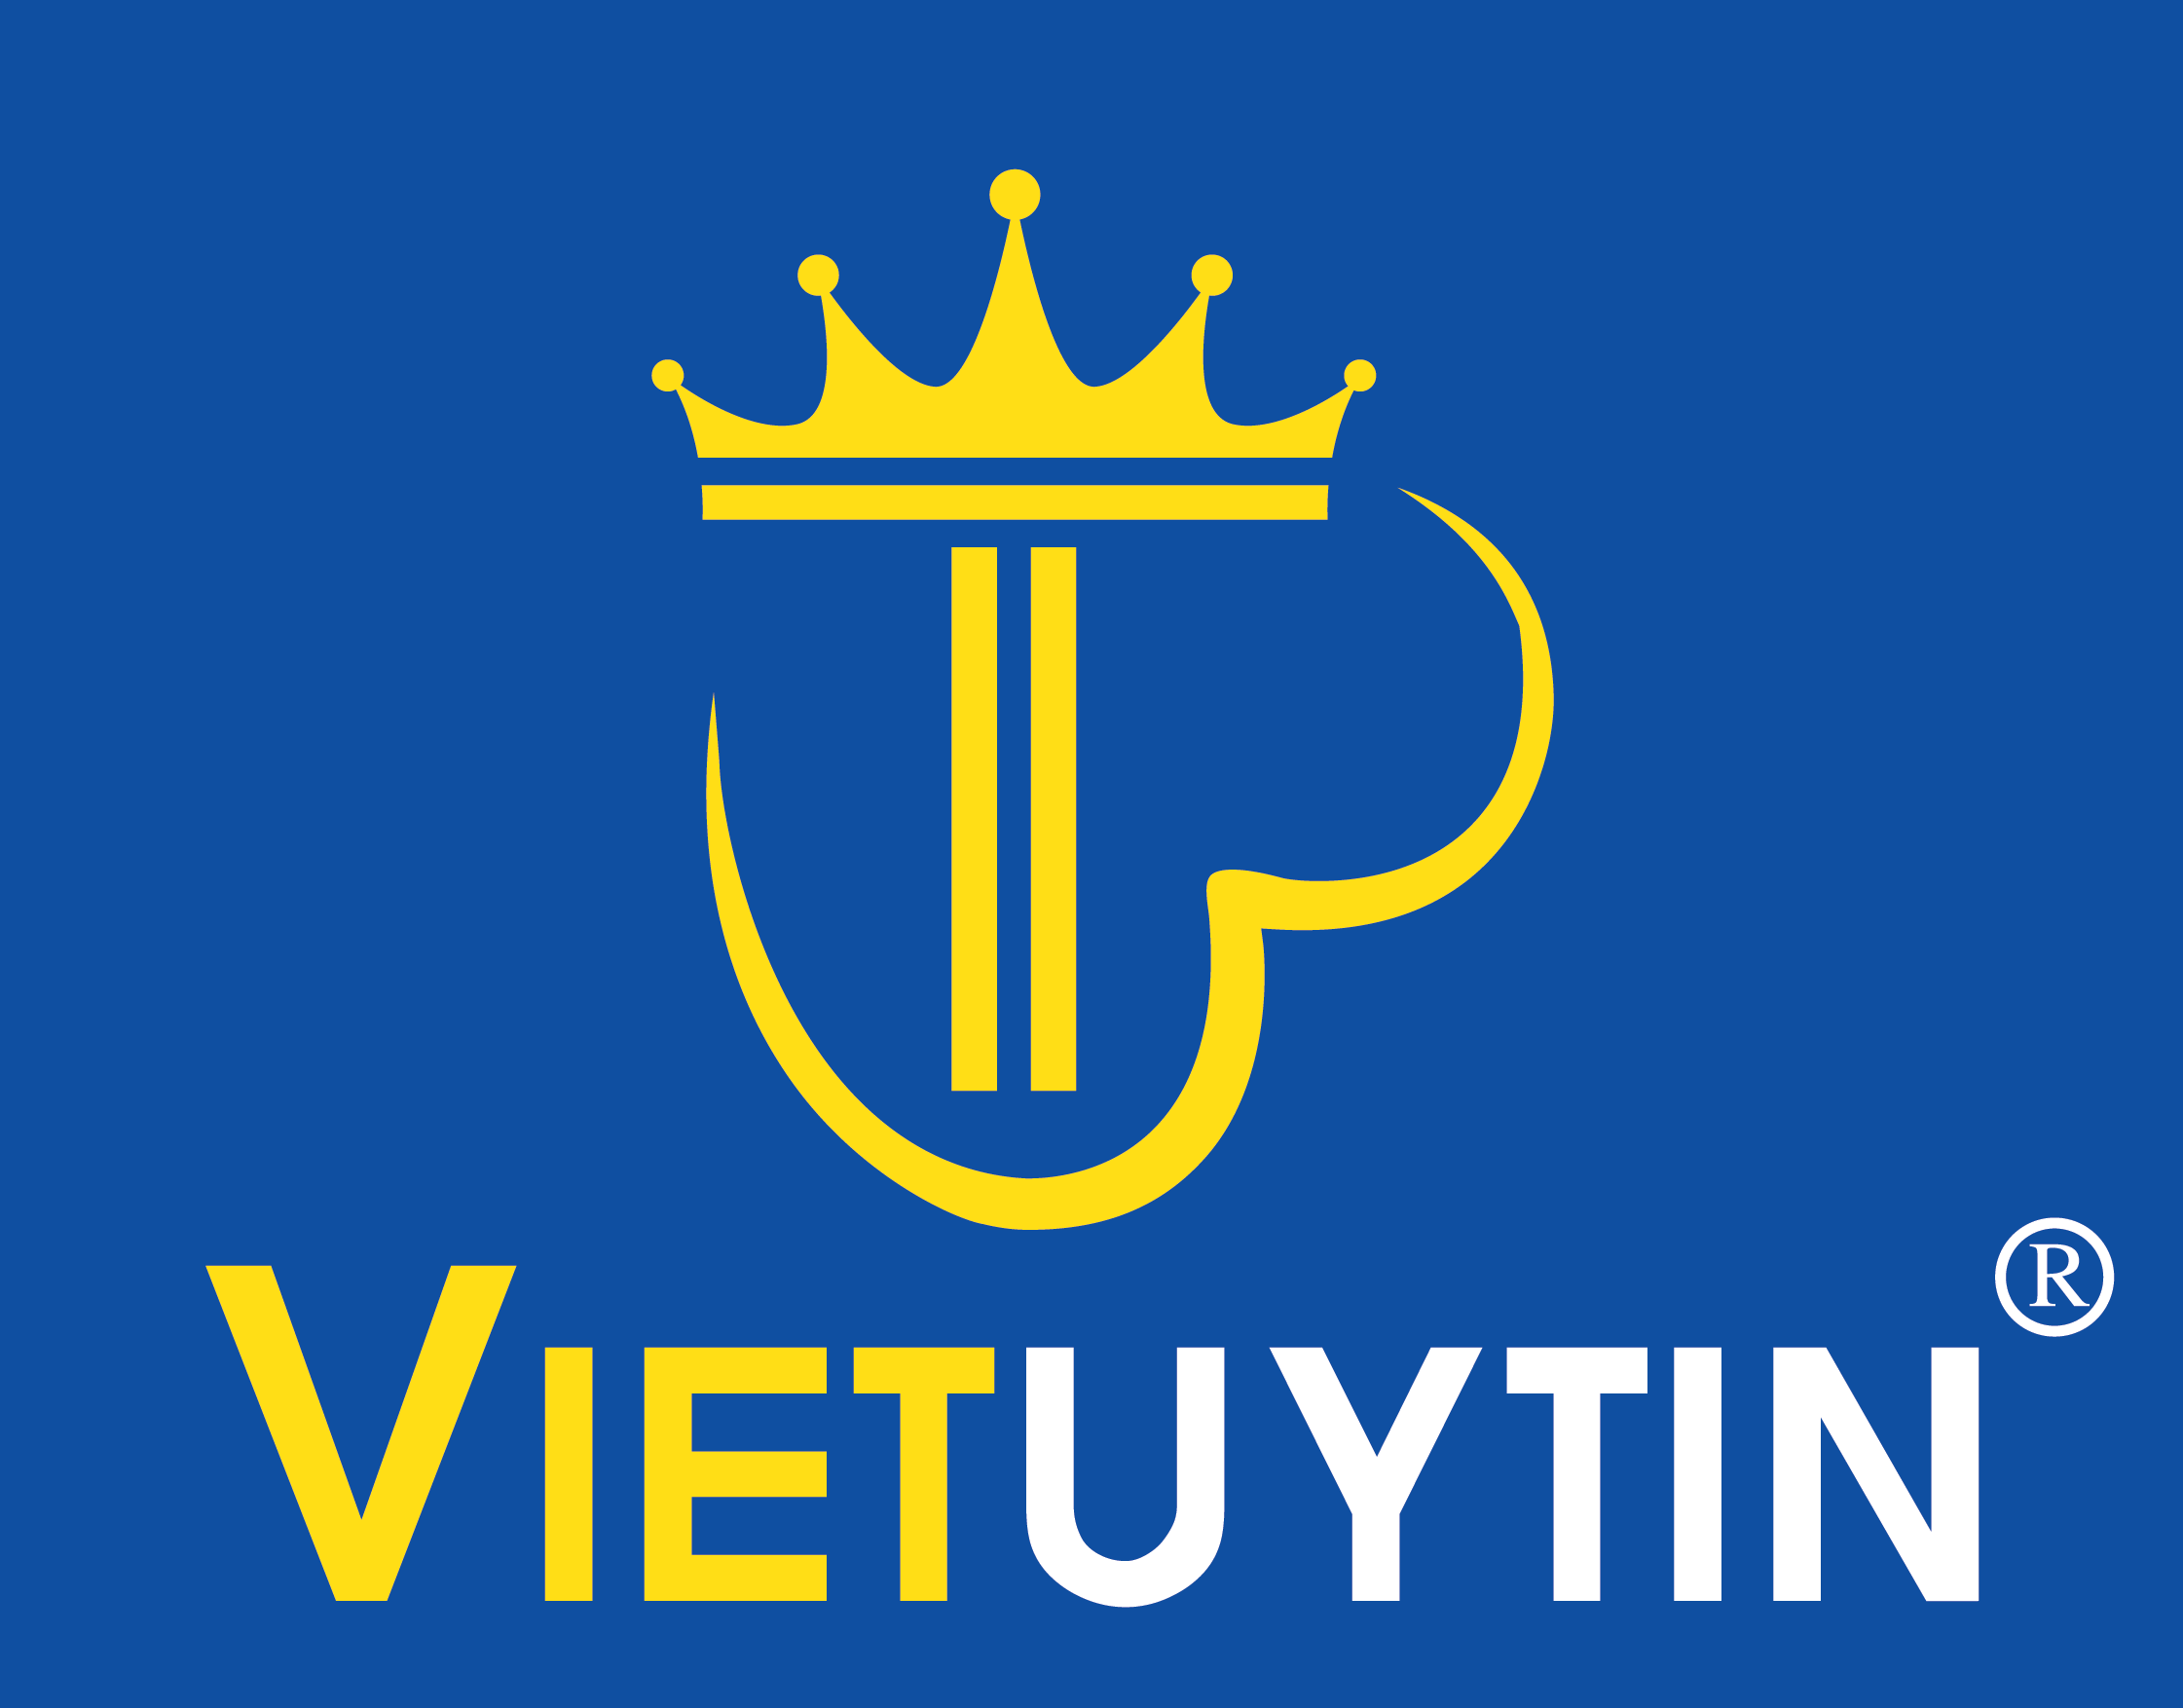 Công ty TNHH Việt Uy Tín logo